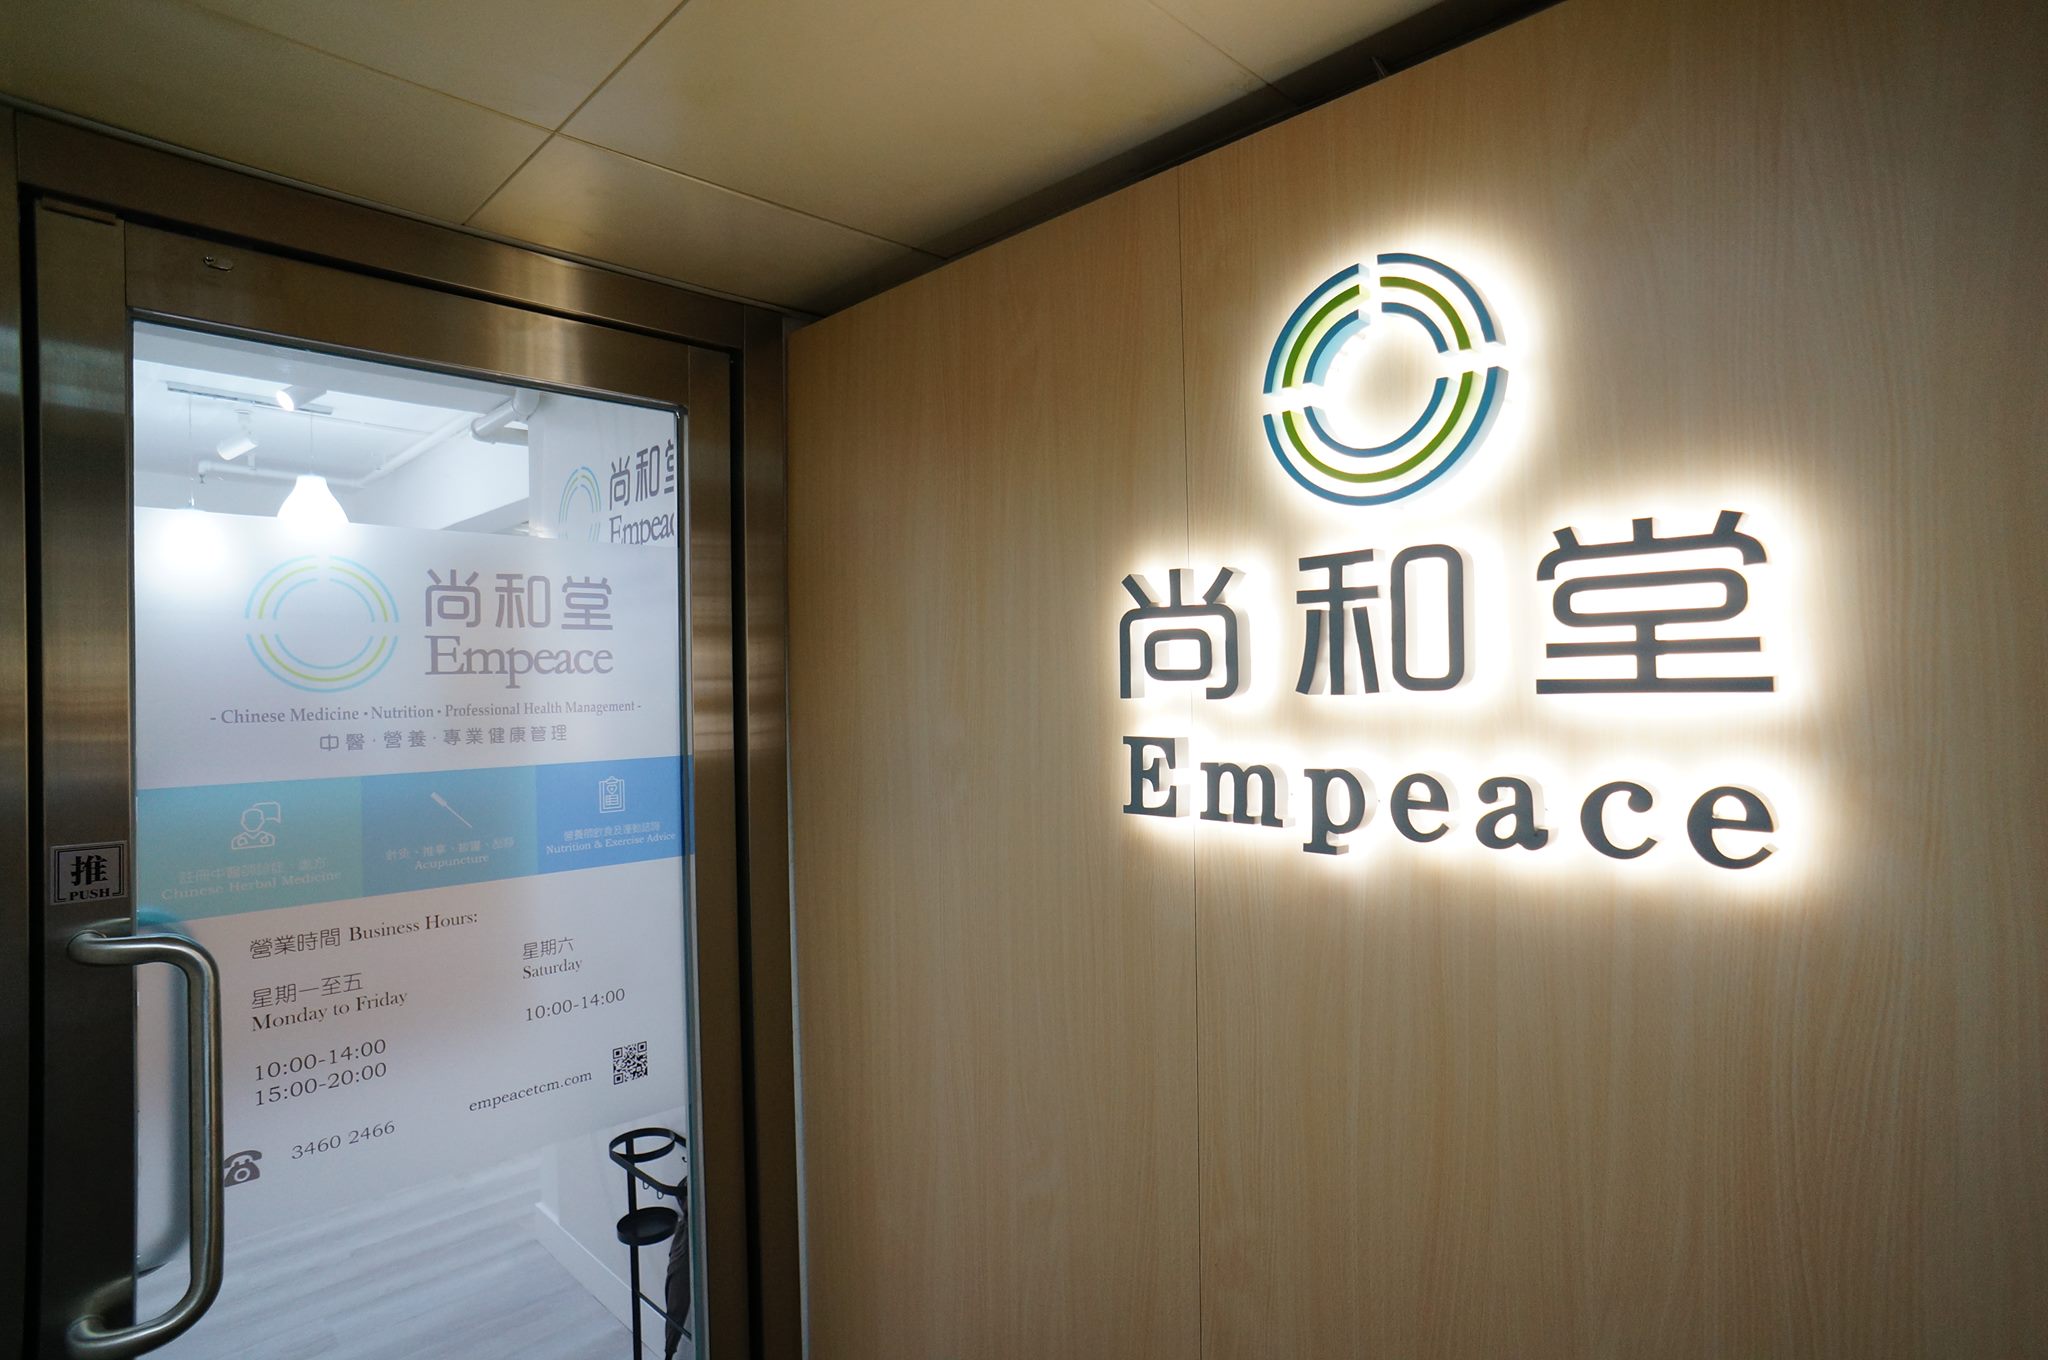 香港中醫師網 Hong Kong Chinese Medicine Platform 中醫診所 / 中醫師: 尚和堂 Empeace Chinese Medical Center